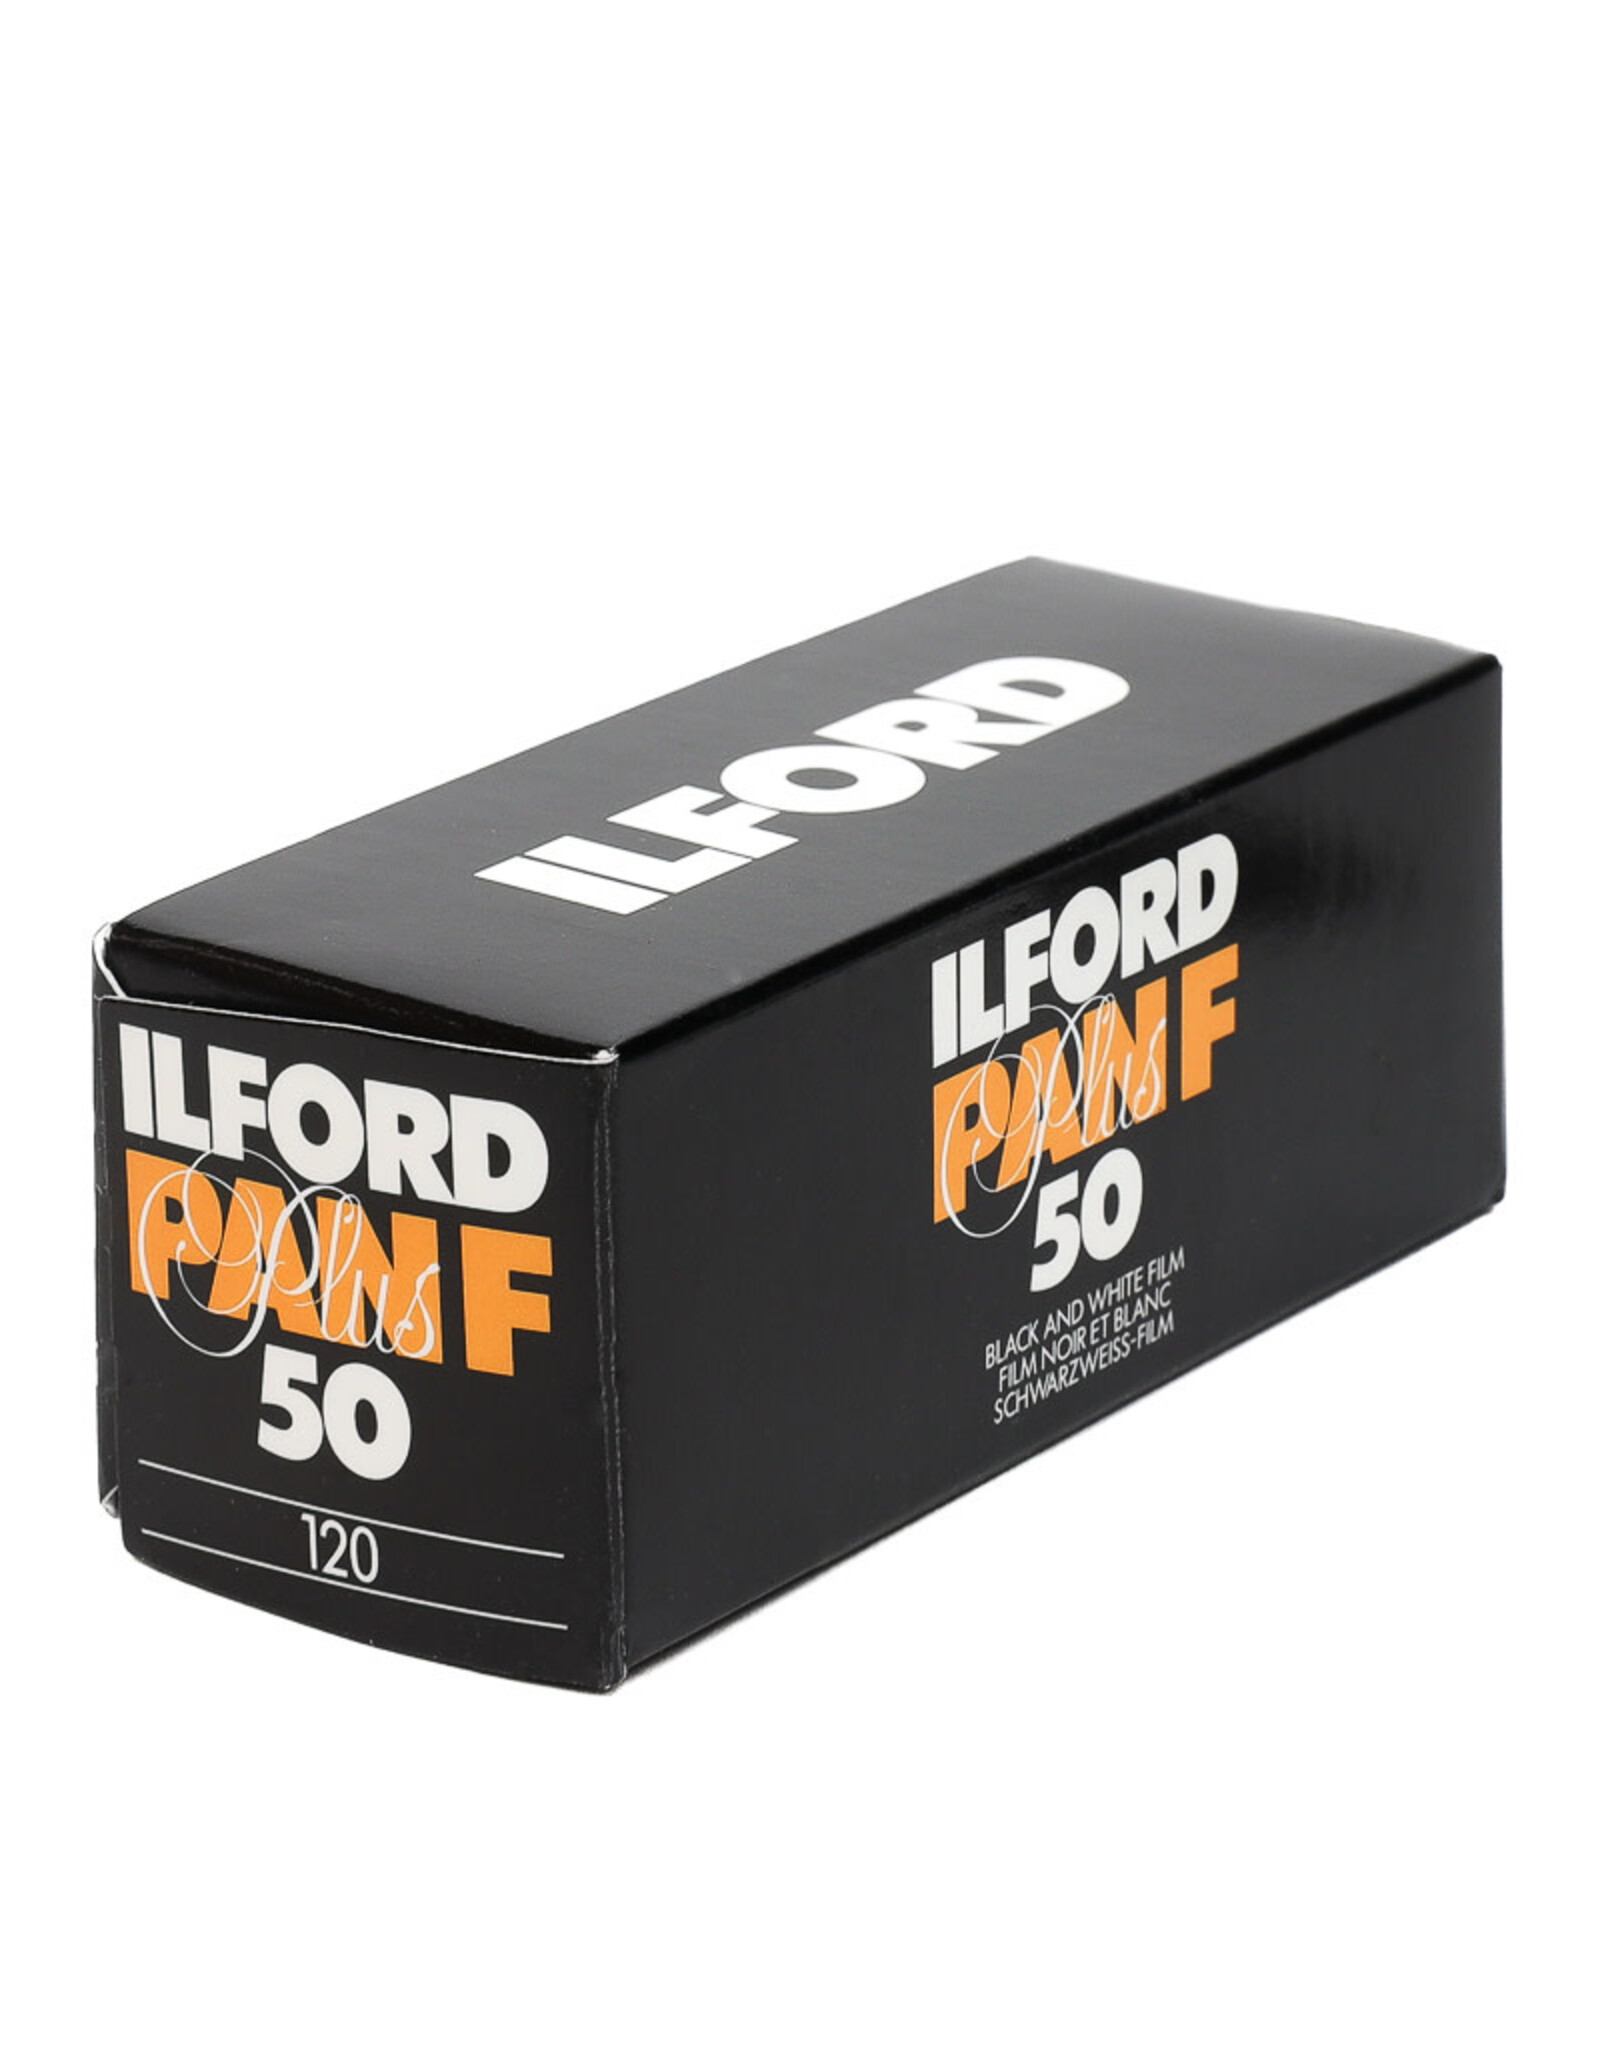 Ilford Ilford Pan F Plus 120 B&W negative film (ISO-50) Exp. 2008